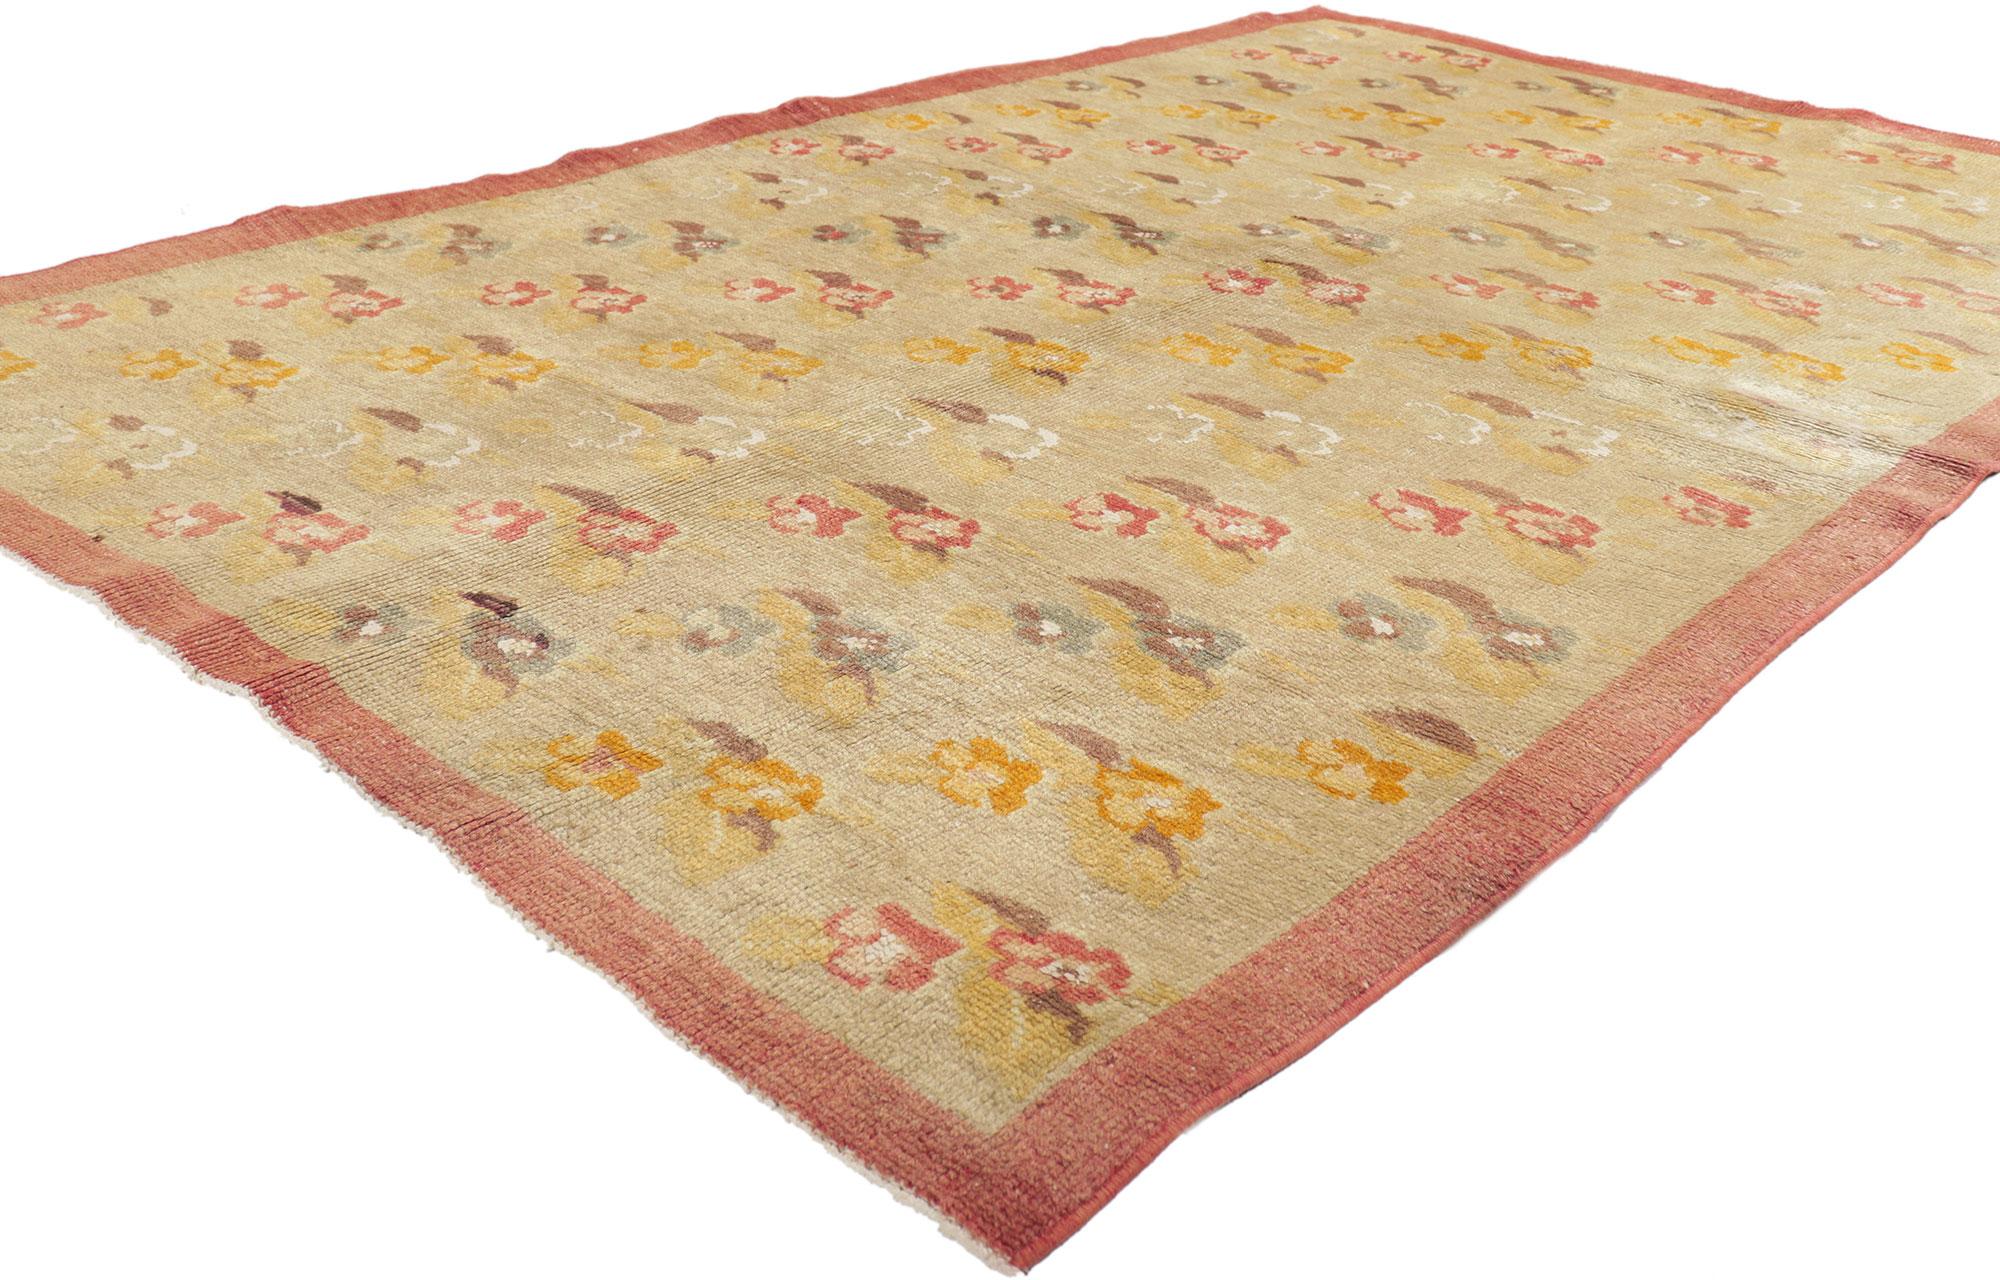 51703 Tapis Oushak turc vintage, 04'07 x 07'04. Les tapis turcs Oushak, originaires de la région occidentale d'Oushak en Turquie, sont réputés pour leurs motifs complexes, leurs palettes de couleurs sereines et leurs luxueux matériaux en laine.